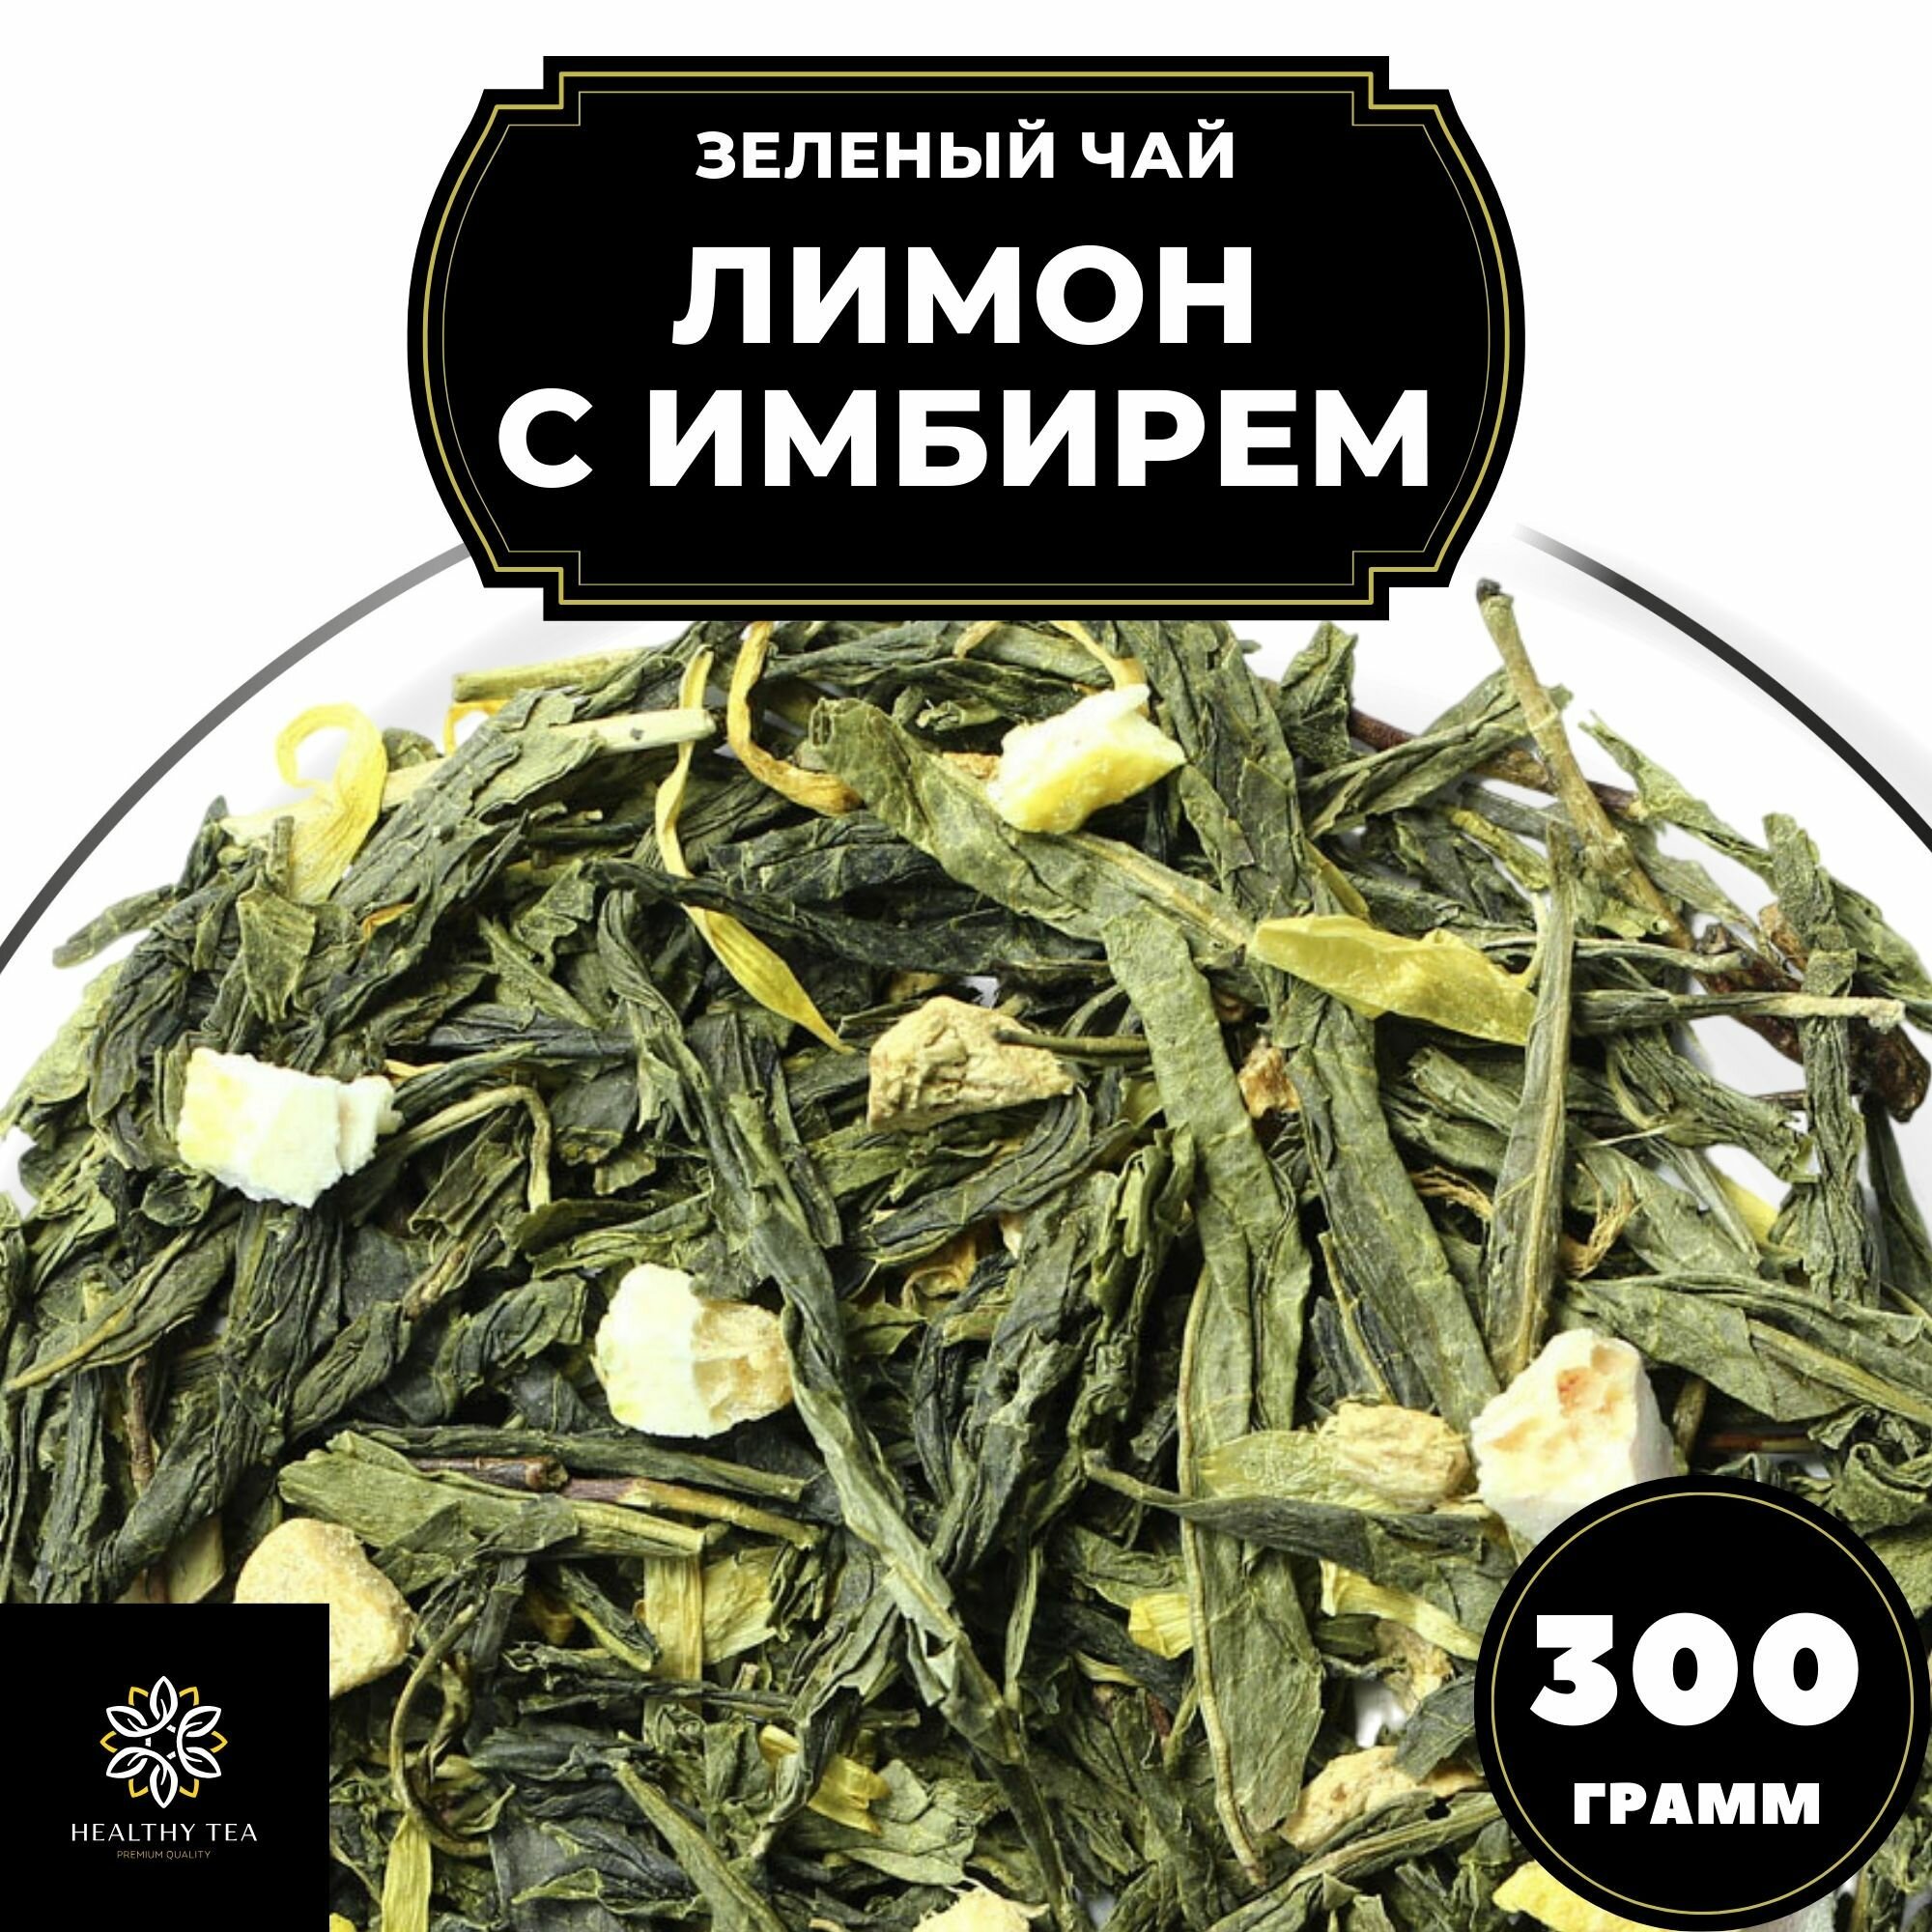 Китайский Зеленый чай с имбирем, лимоном и календулой Лимон с имбирем Полезный чай / HEALTHY TEA, 300 г